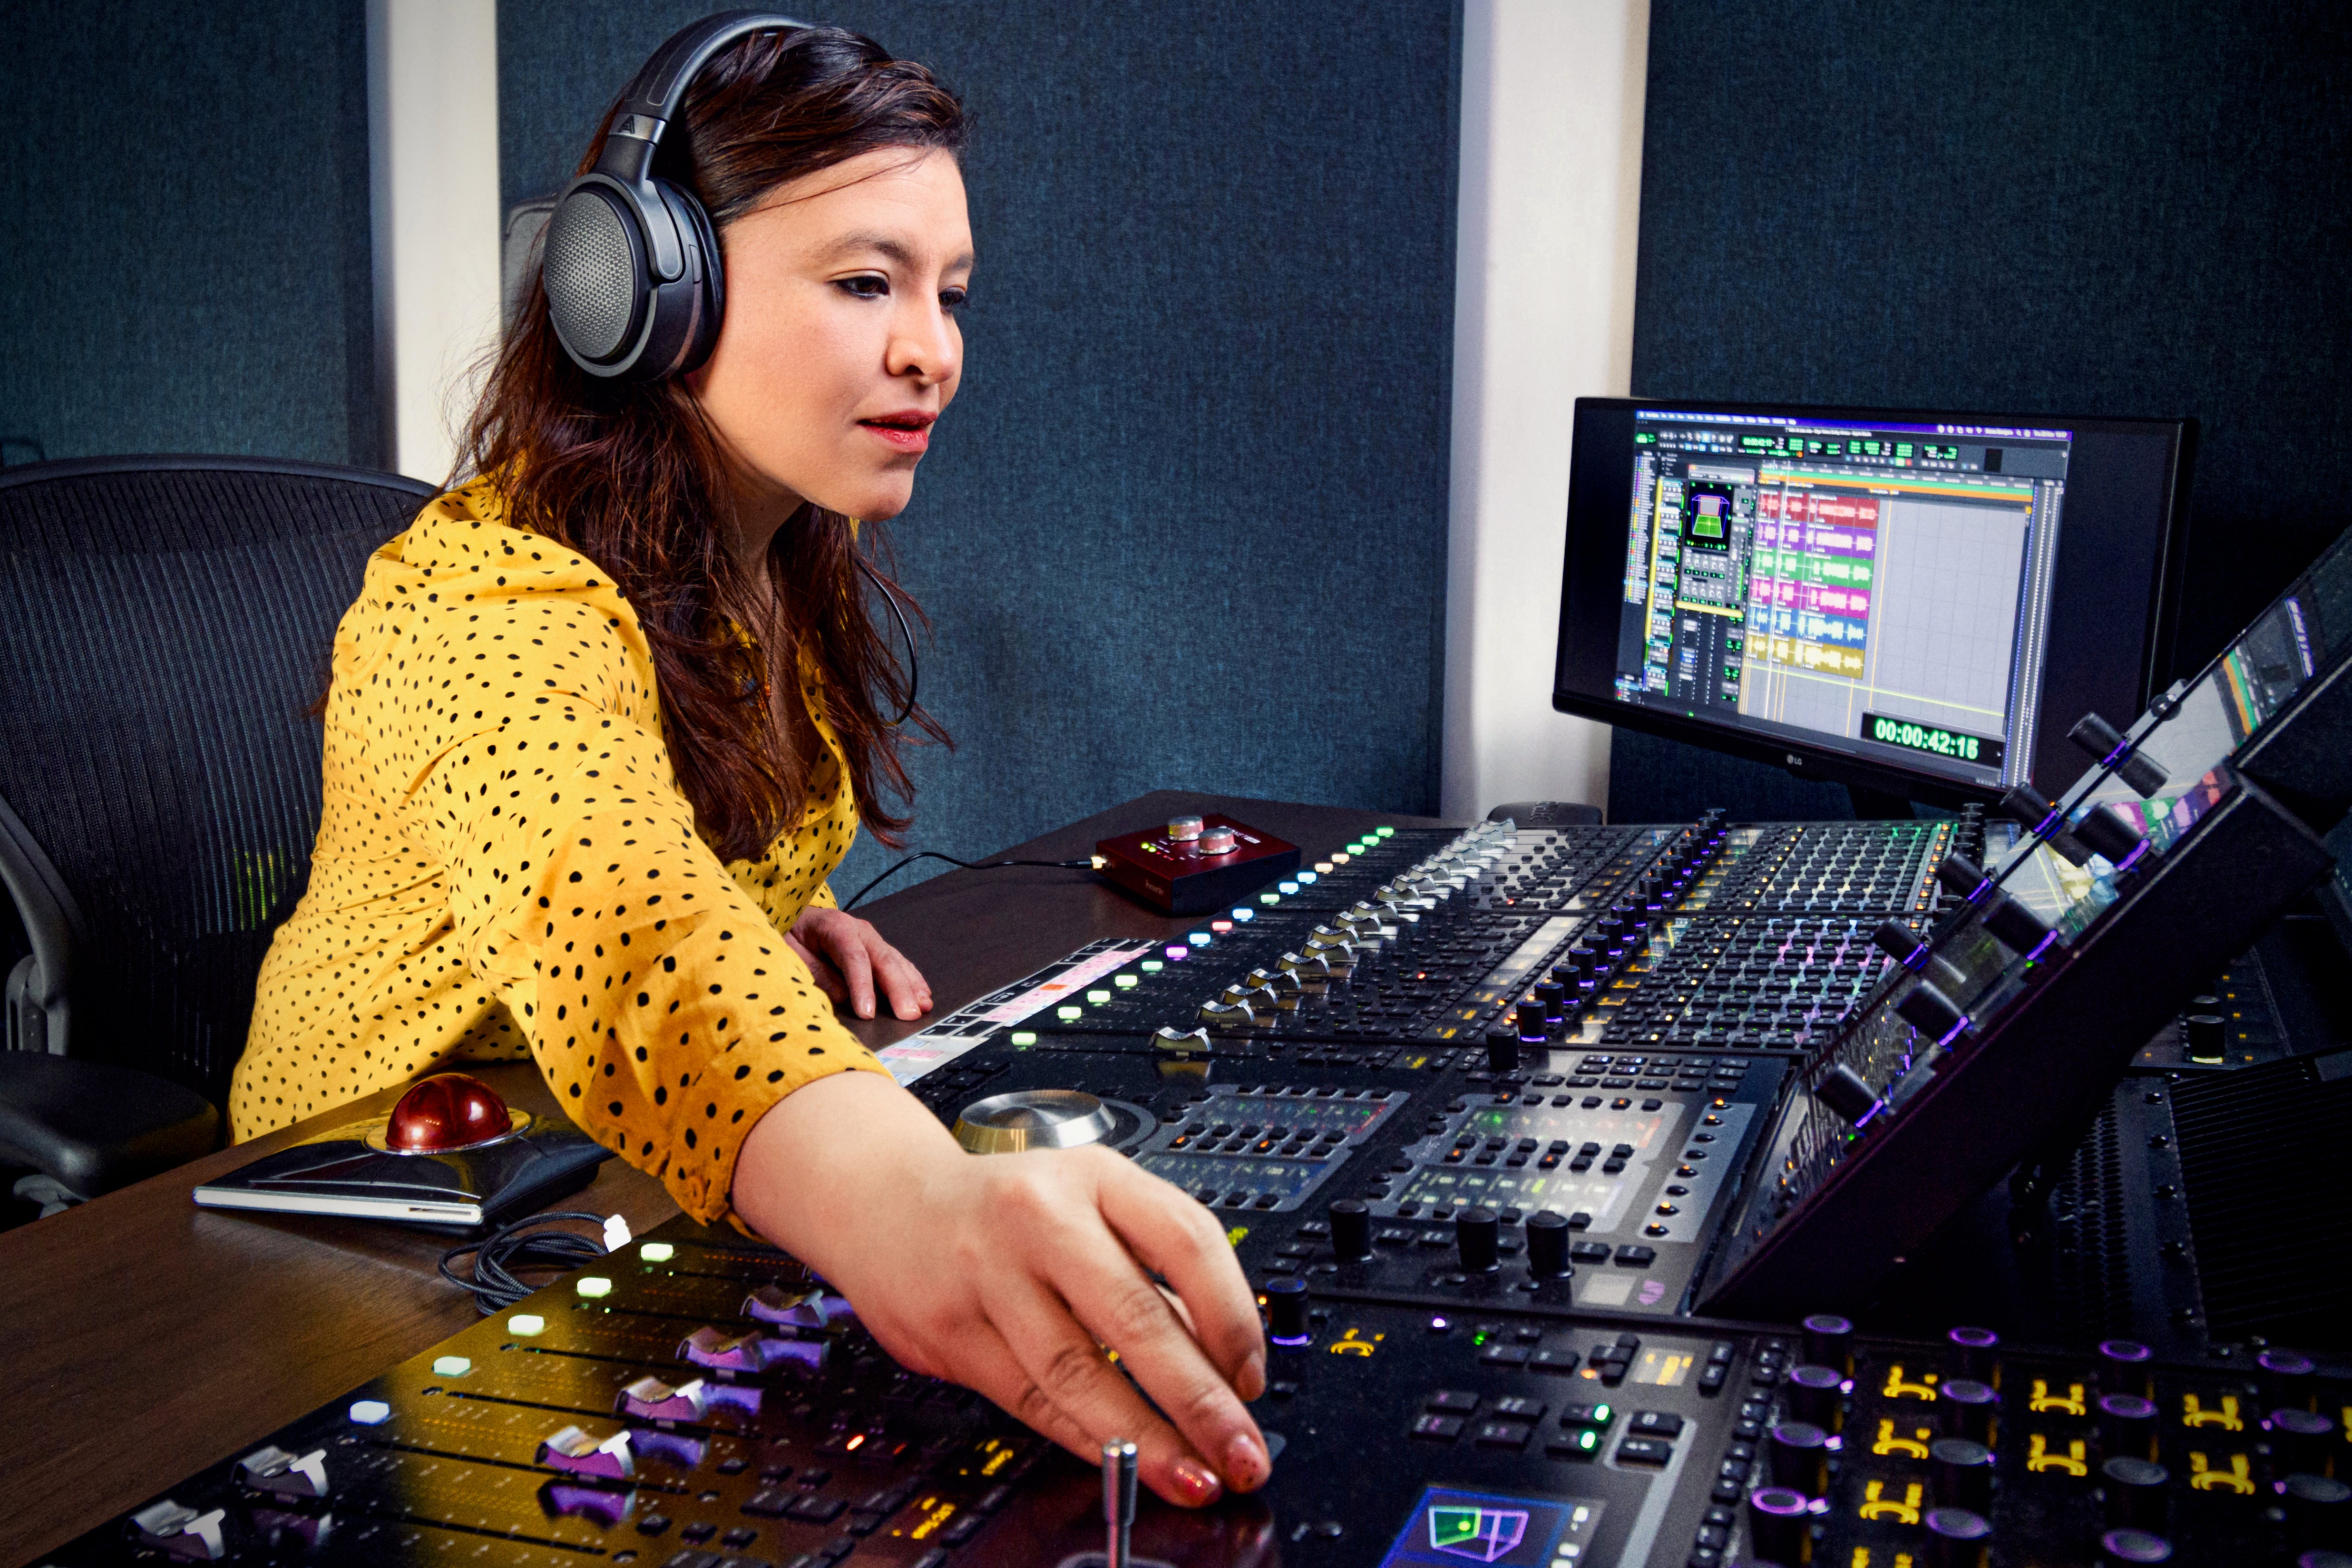 Carolina Antón mixes using her Audeze Mobius headphones